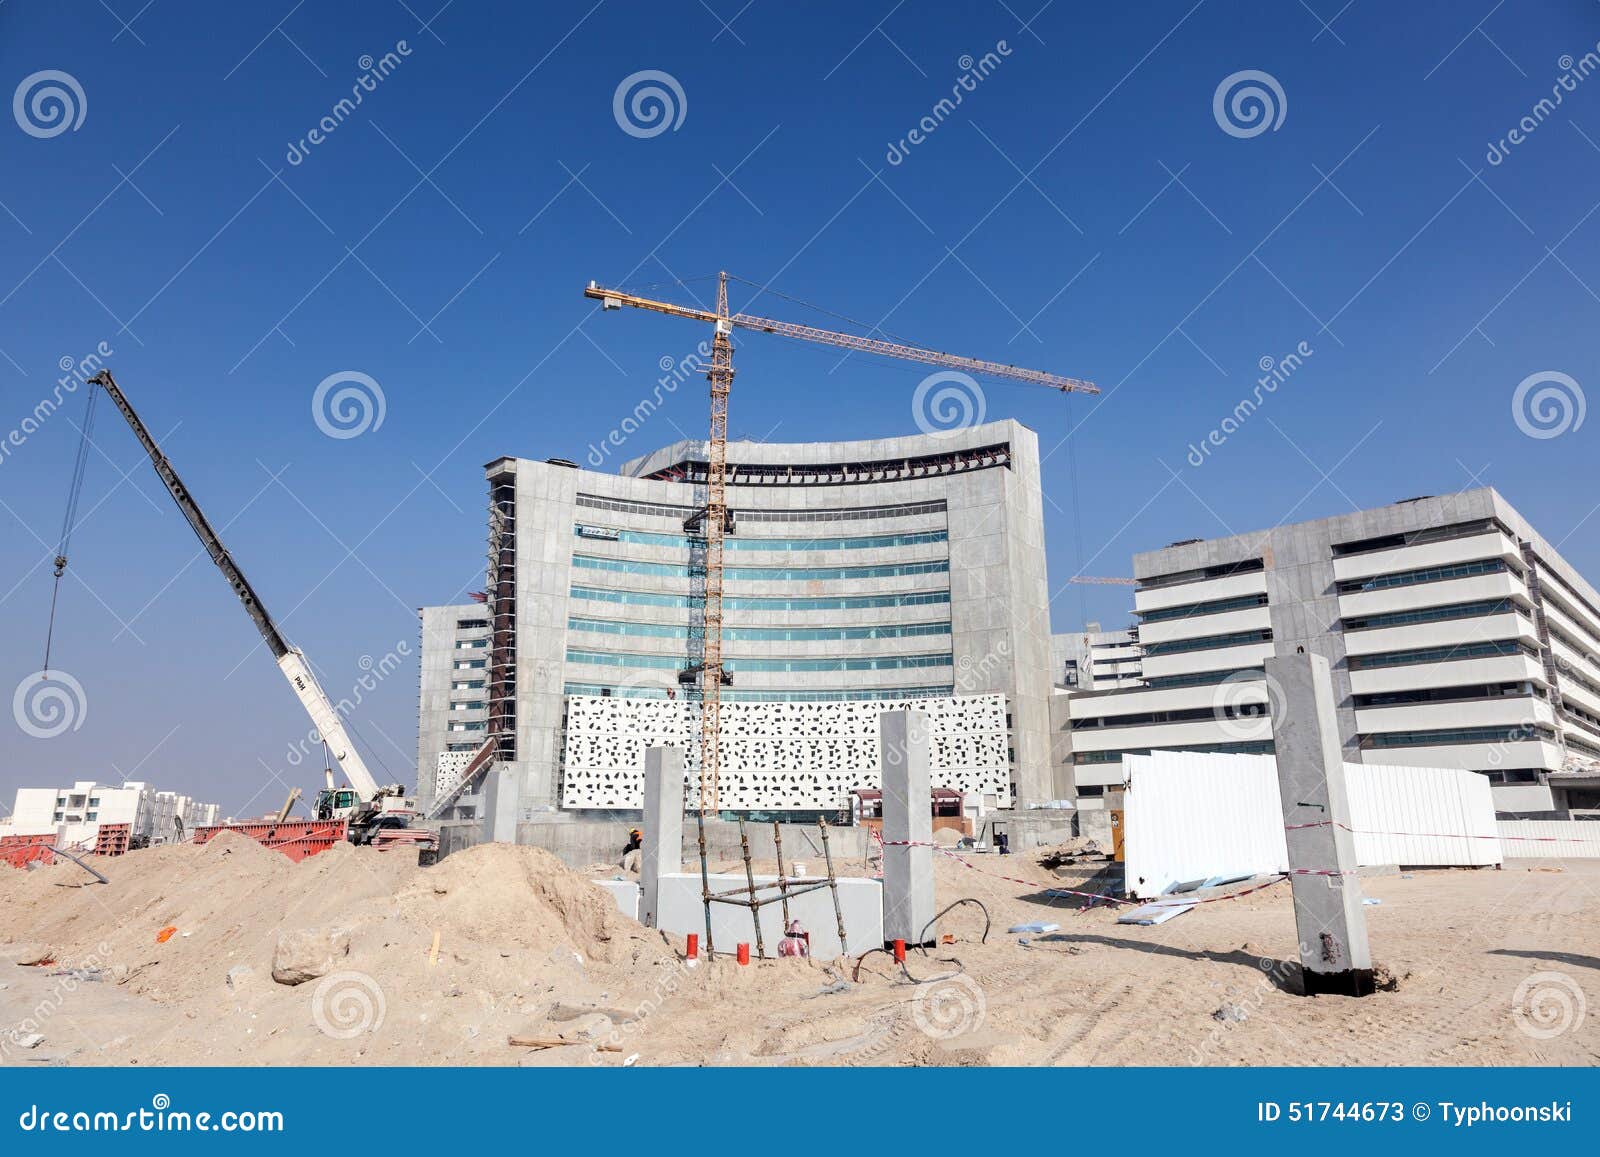 Строительство медицинских учреждений. Фото стройки медучреждений. Стройка медцентра в Ялте.